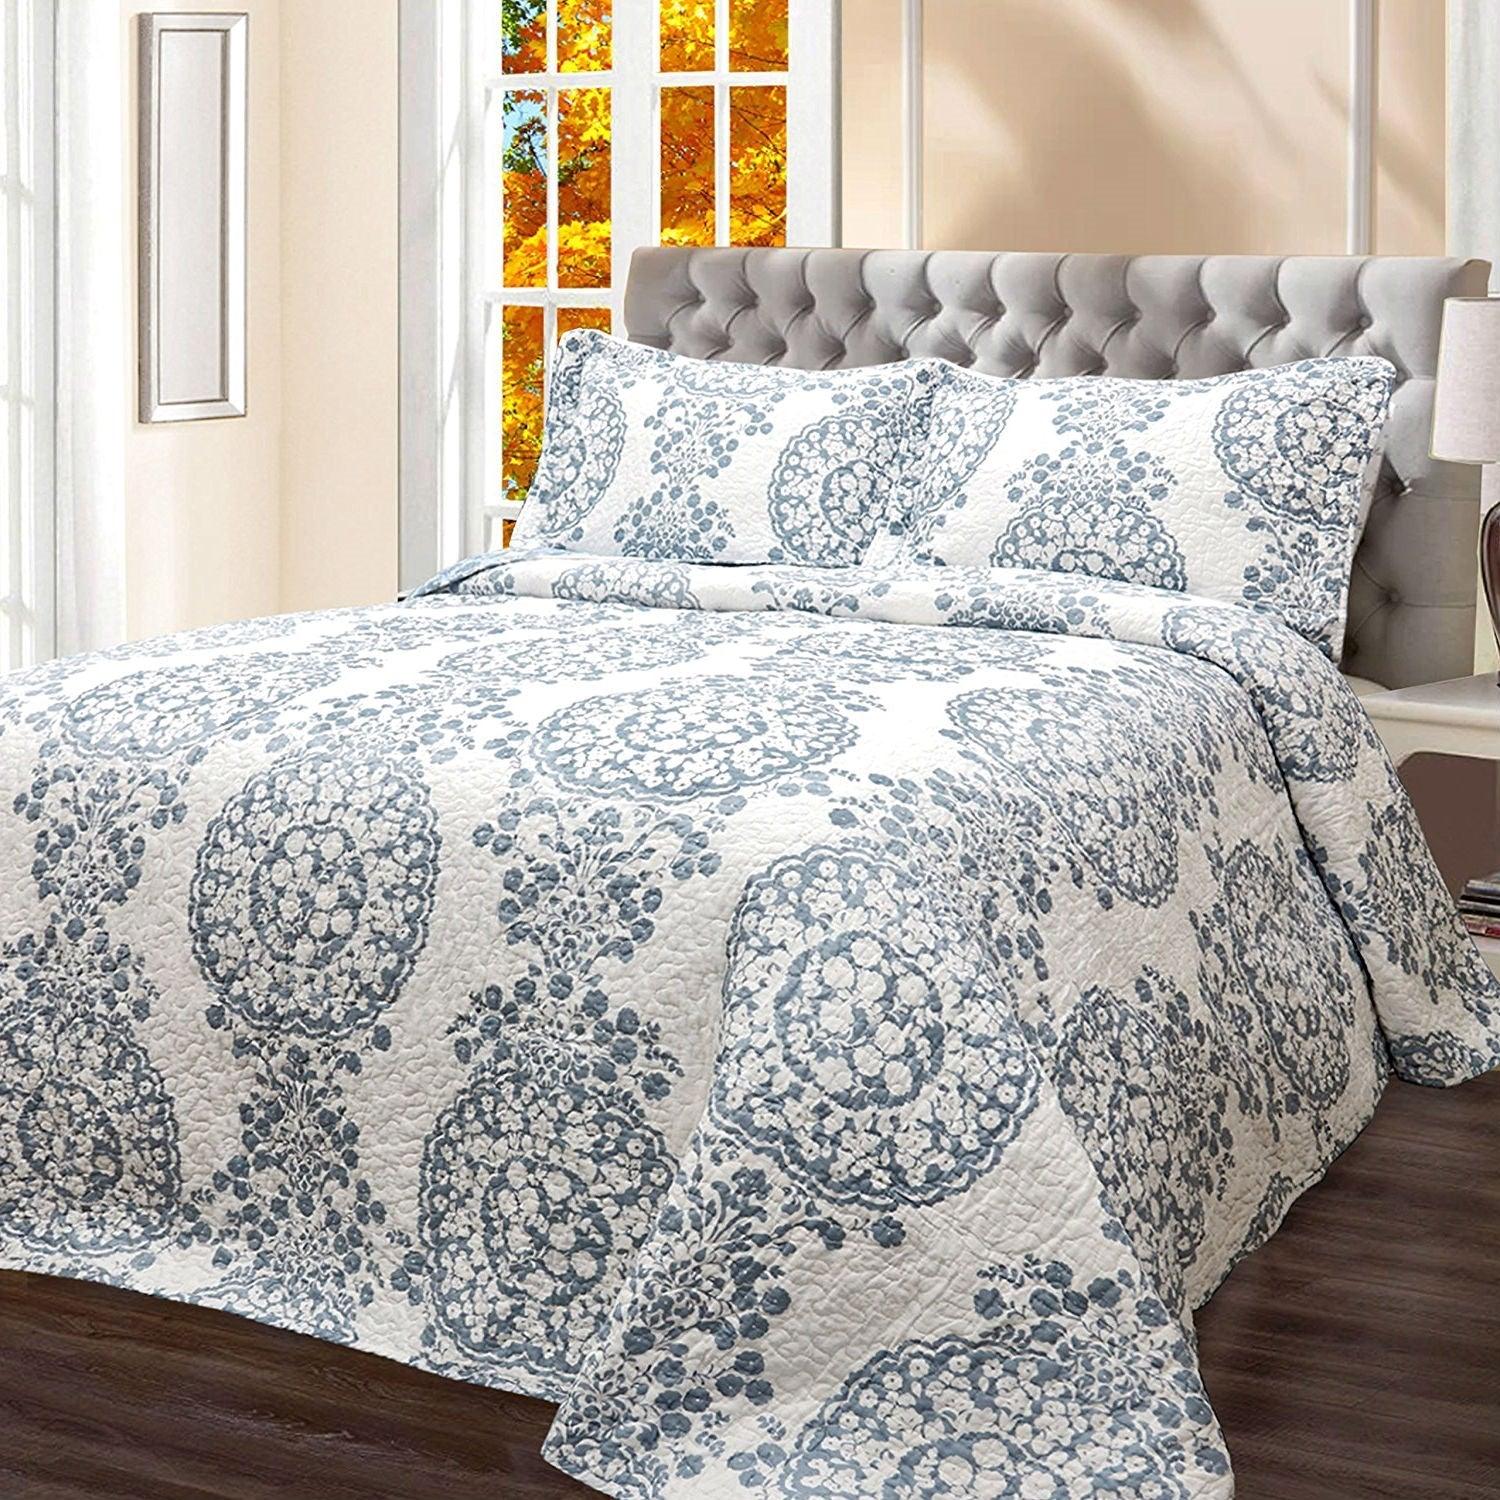 King 3-Piece Reversible Cotton Quilt Set with White Blue Floral Medallion Design - beddingbag.com